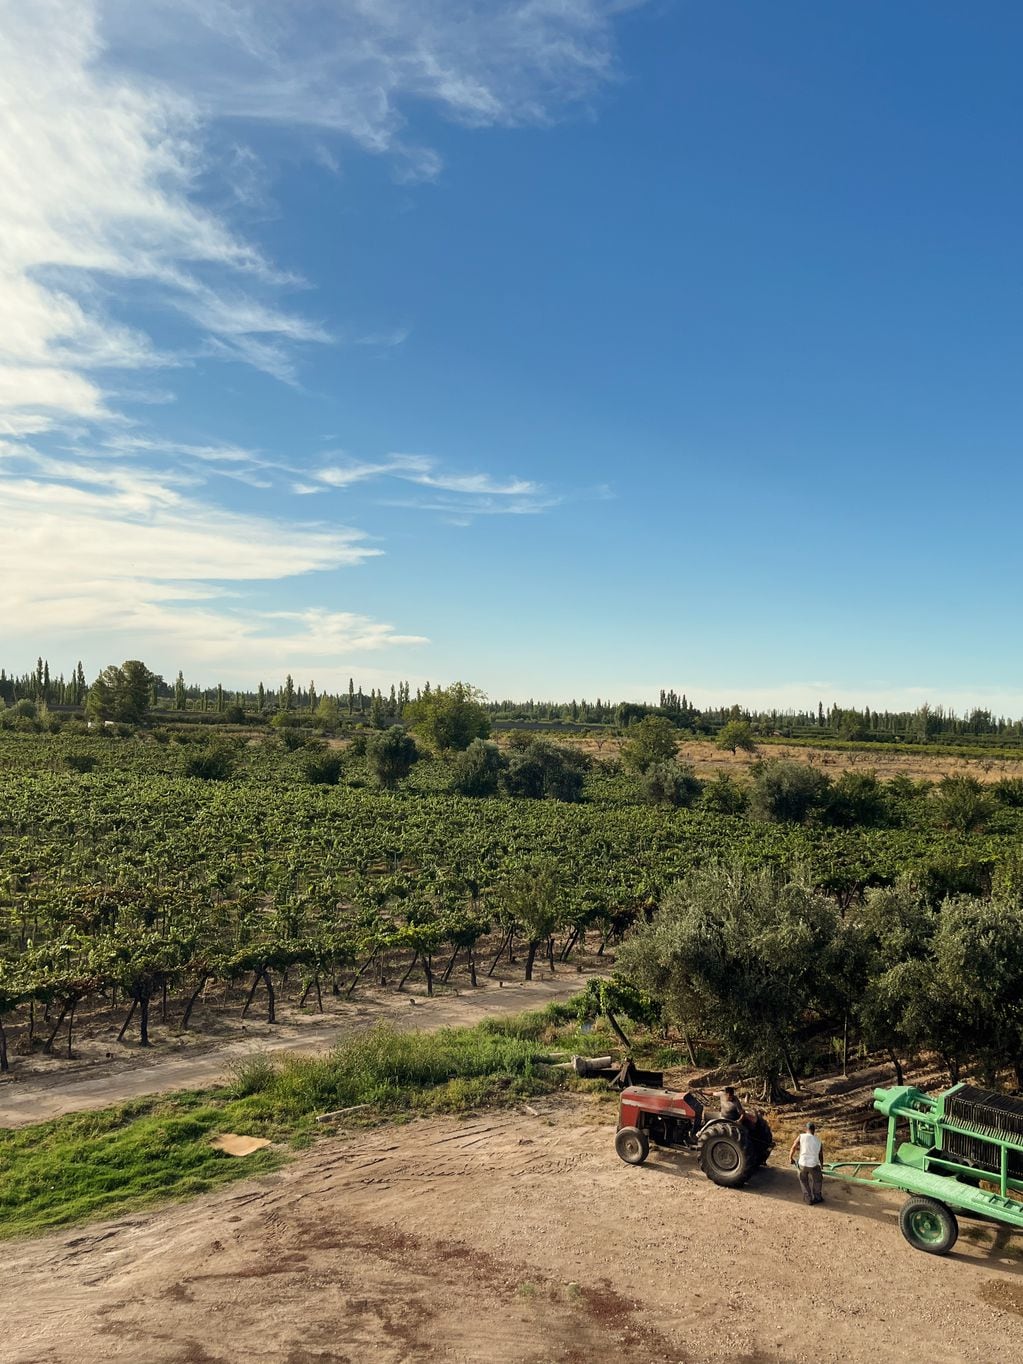 La zona Este es la que concentra la mayor cantidad de viñedos de todo el país. - Gentileza